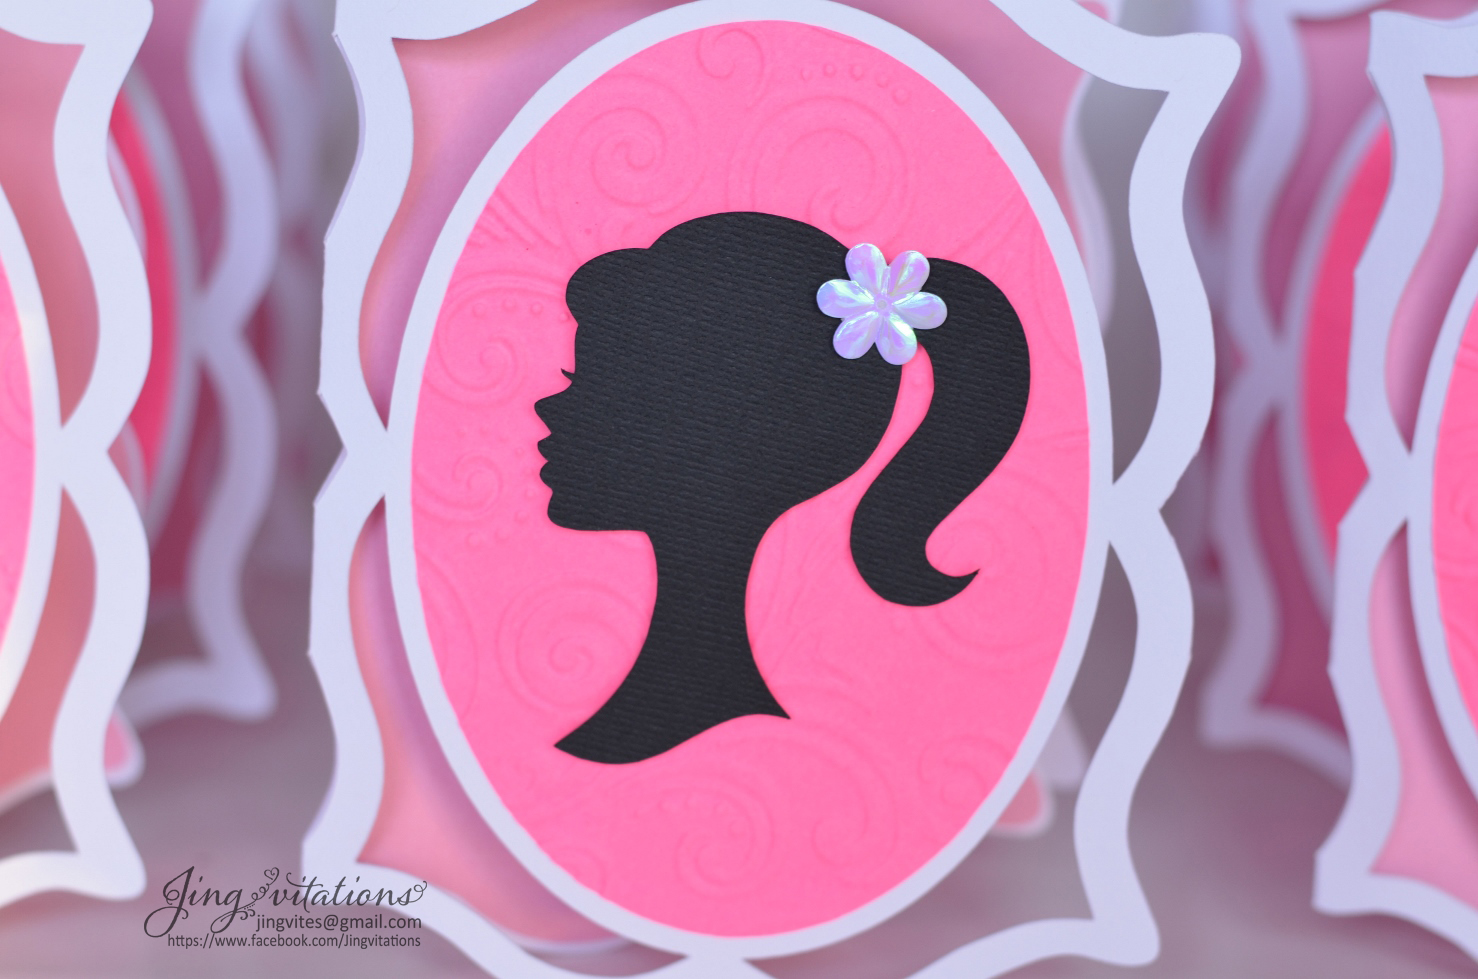 Sắp đến sinh nhật bạn hay party mà chưa có ý tưởng để thiết kế lời mời? Một khung hình độc đáo và đầy sắc màu chính là lựa chọn bạn nên tham khảo. Hãy cùng xem chi tiết về khung lời mời cho tiệc Barbie. 